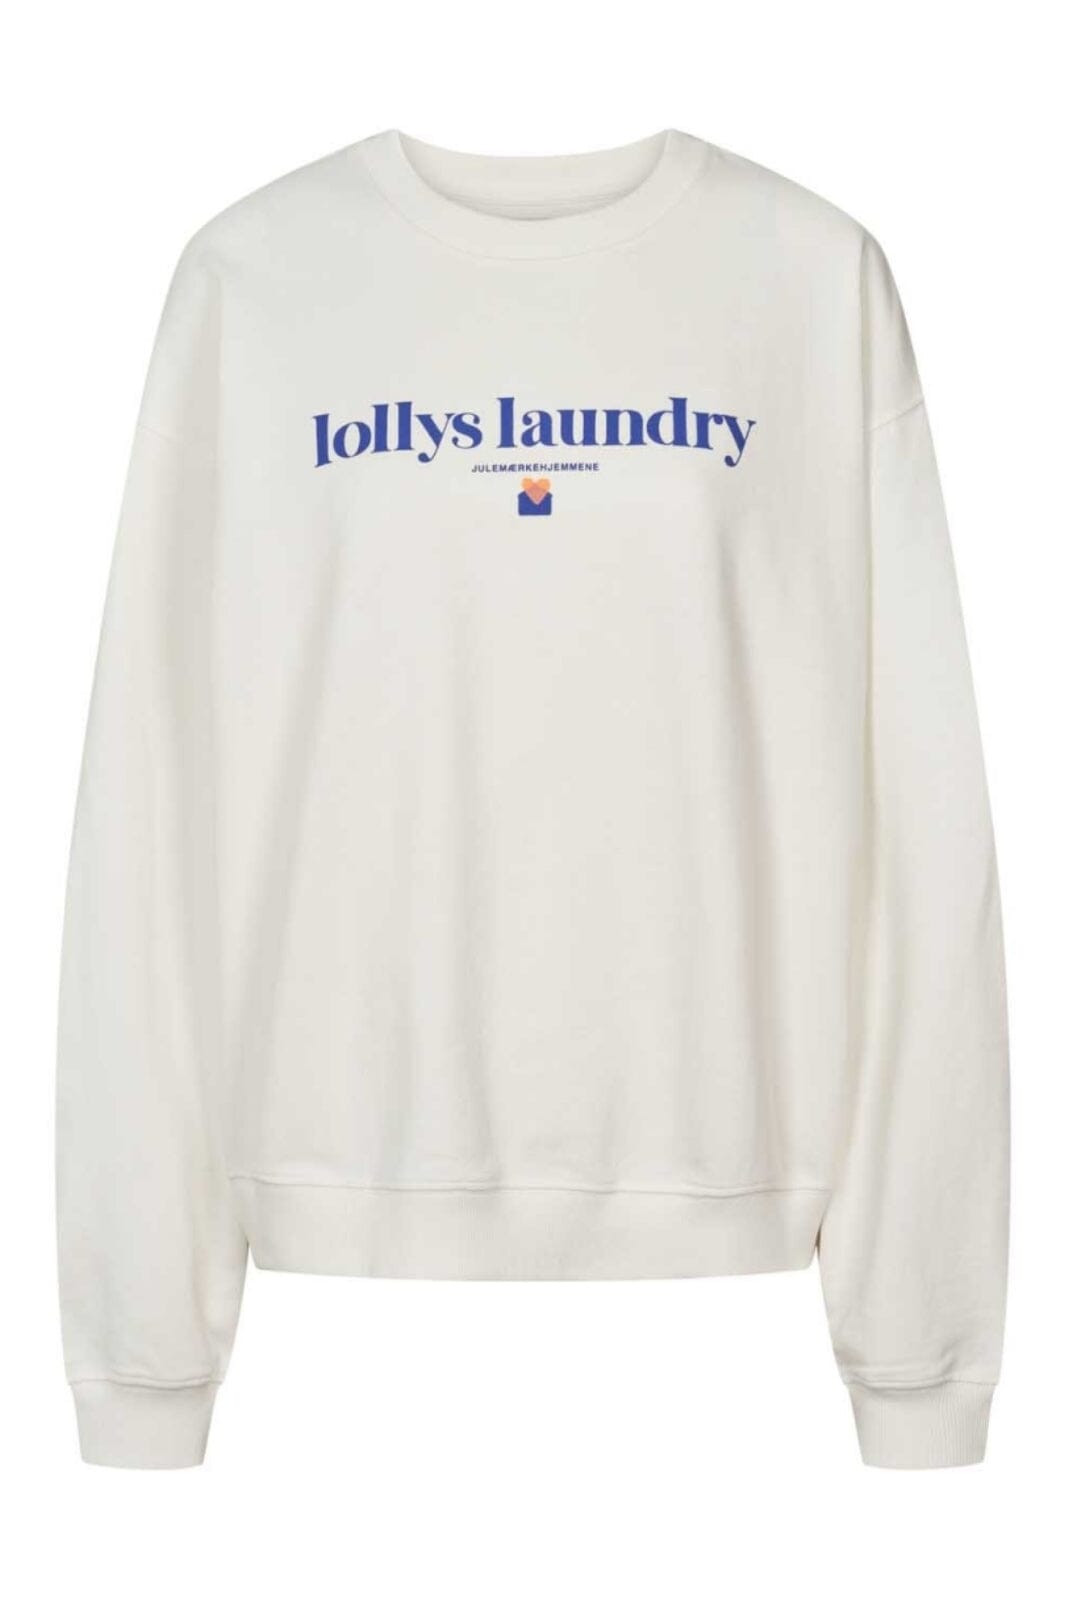 Lollys Laundry - California Julemærke Sweat Sweatshirt 